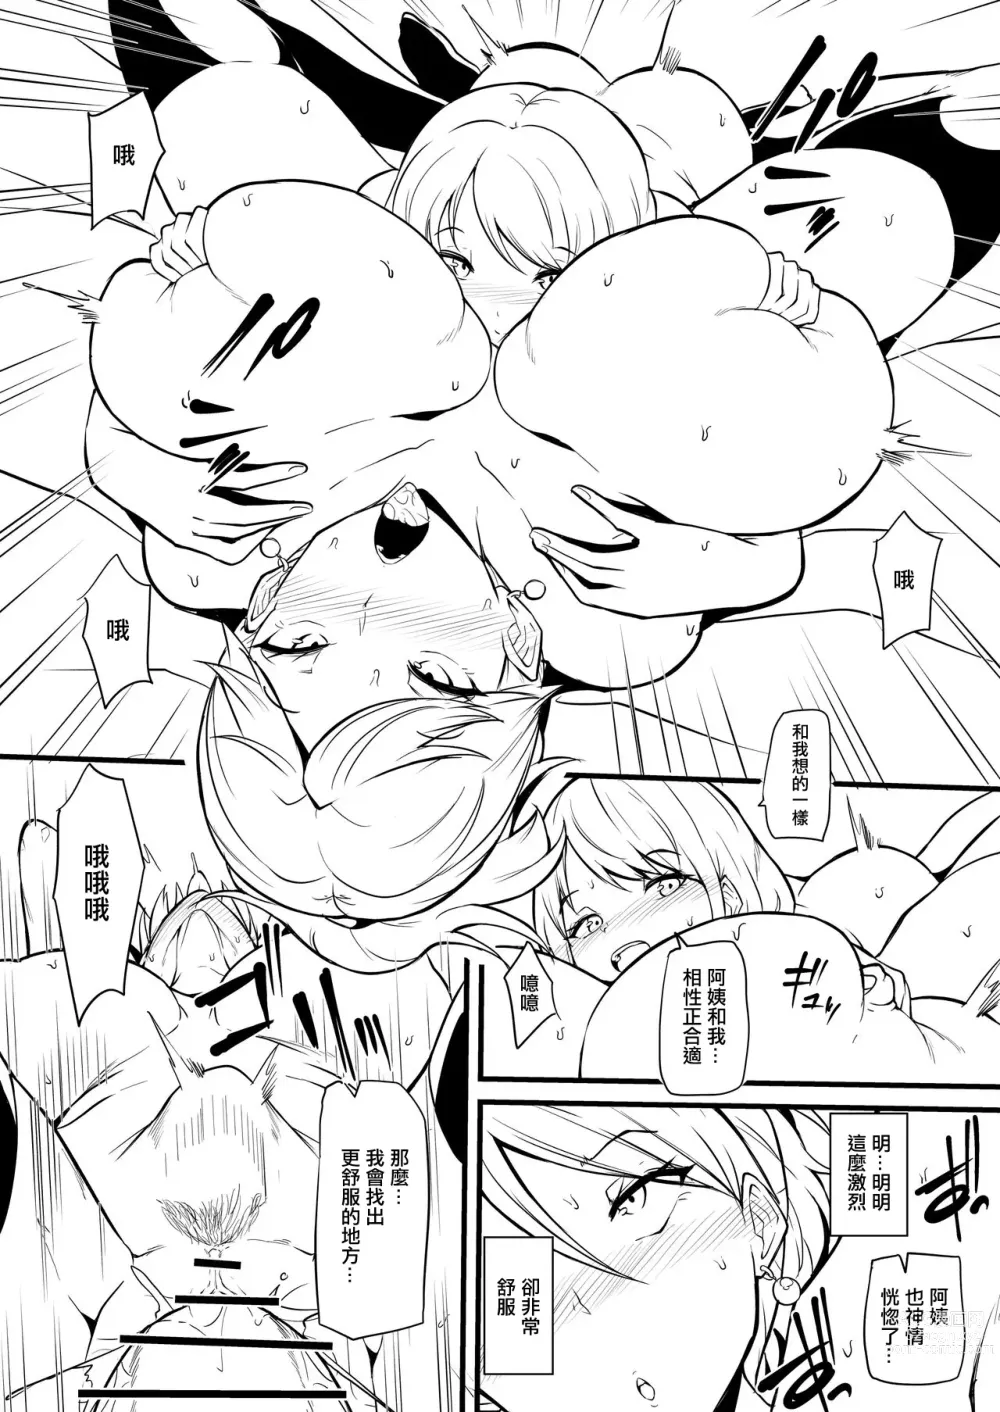 Page 7 of doujinshi Musume no Tomodachi ni Otosareru Manga Matome